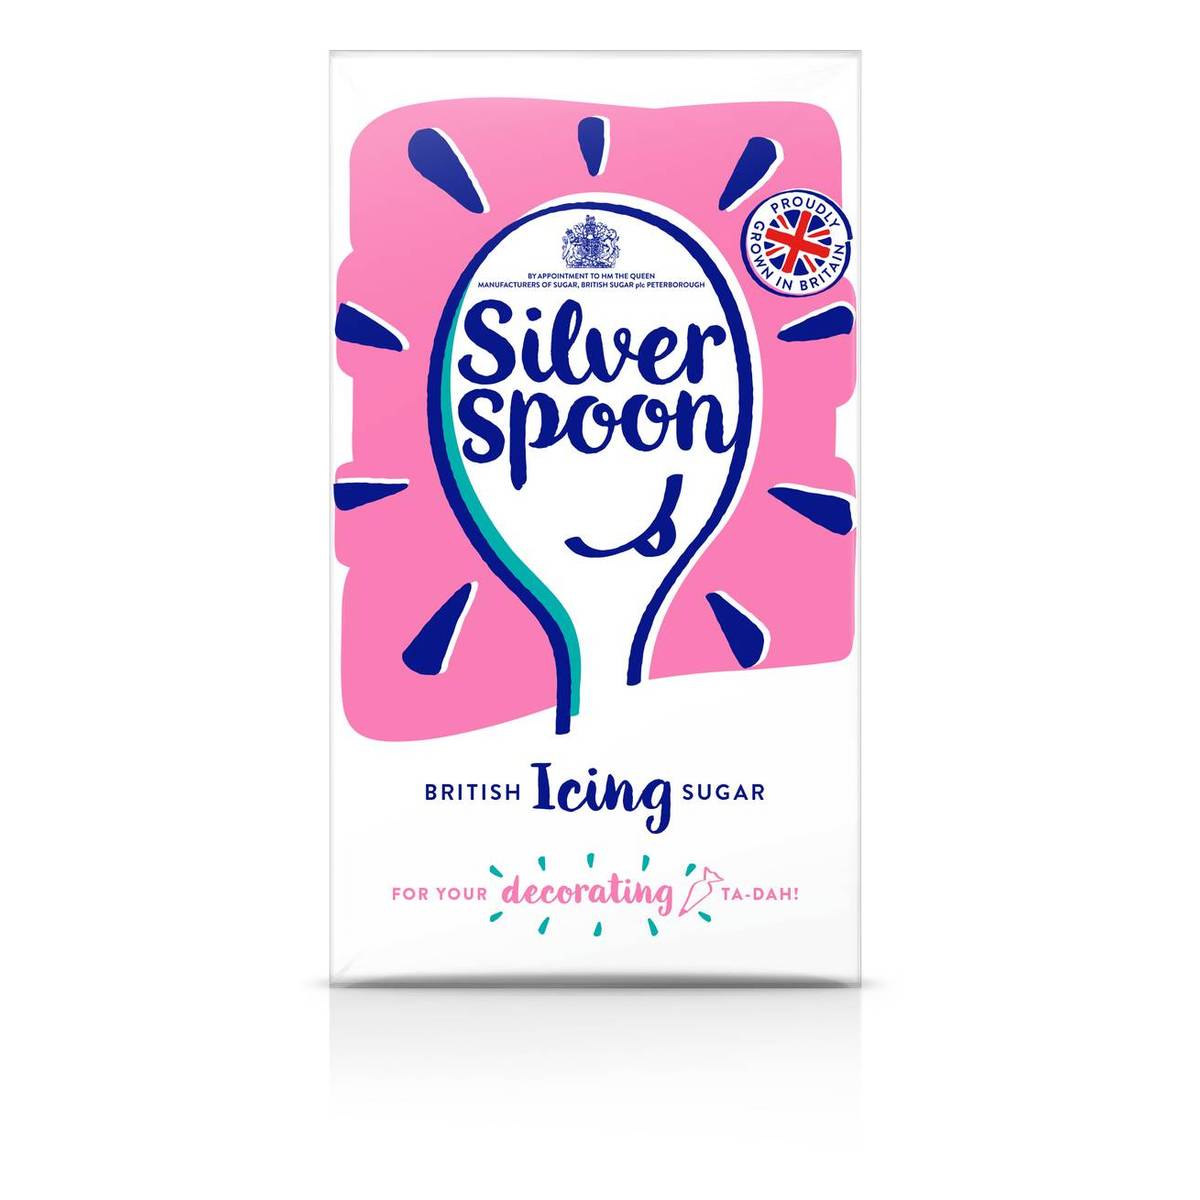 Silver spoon icing sugar